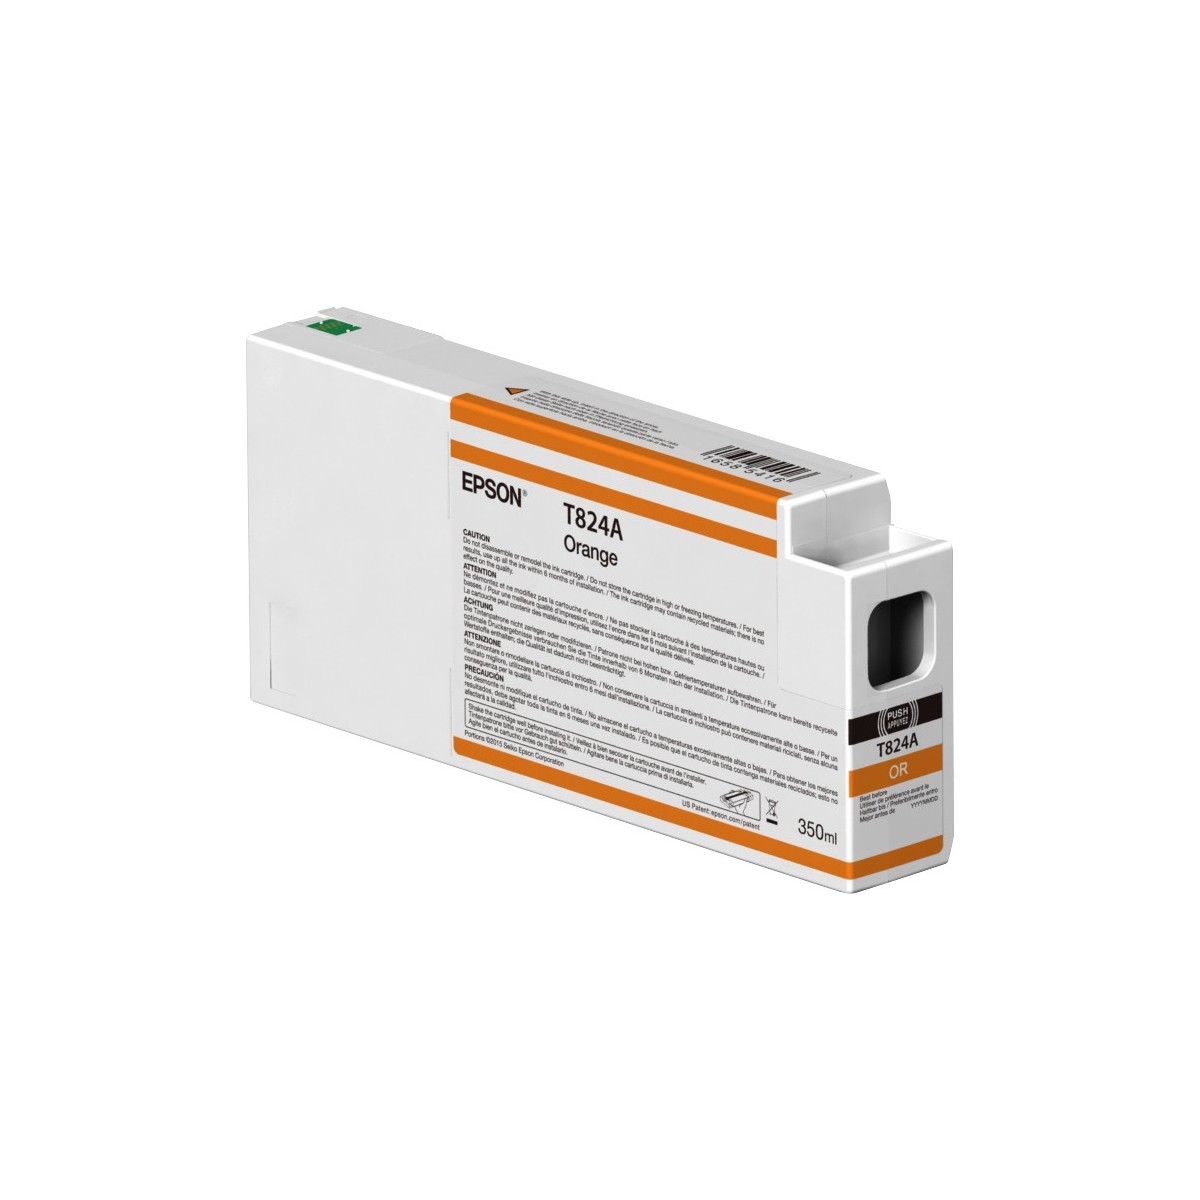 Epson Singlepack Orange T824A00 UltraChrome HDX 350ml - Pigment-based ink - 350 ml - 1 pc(s)